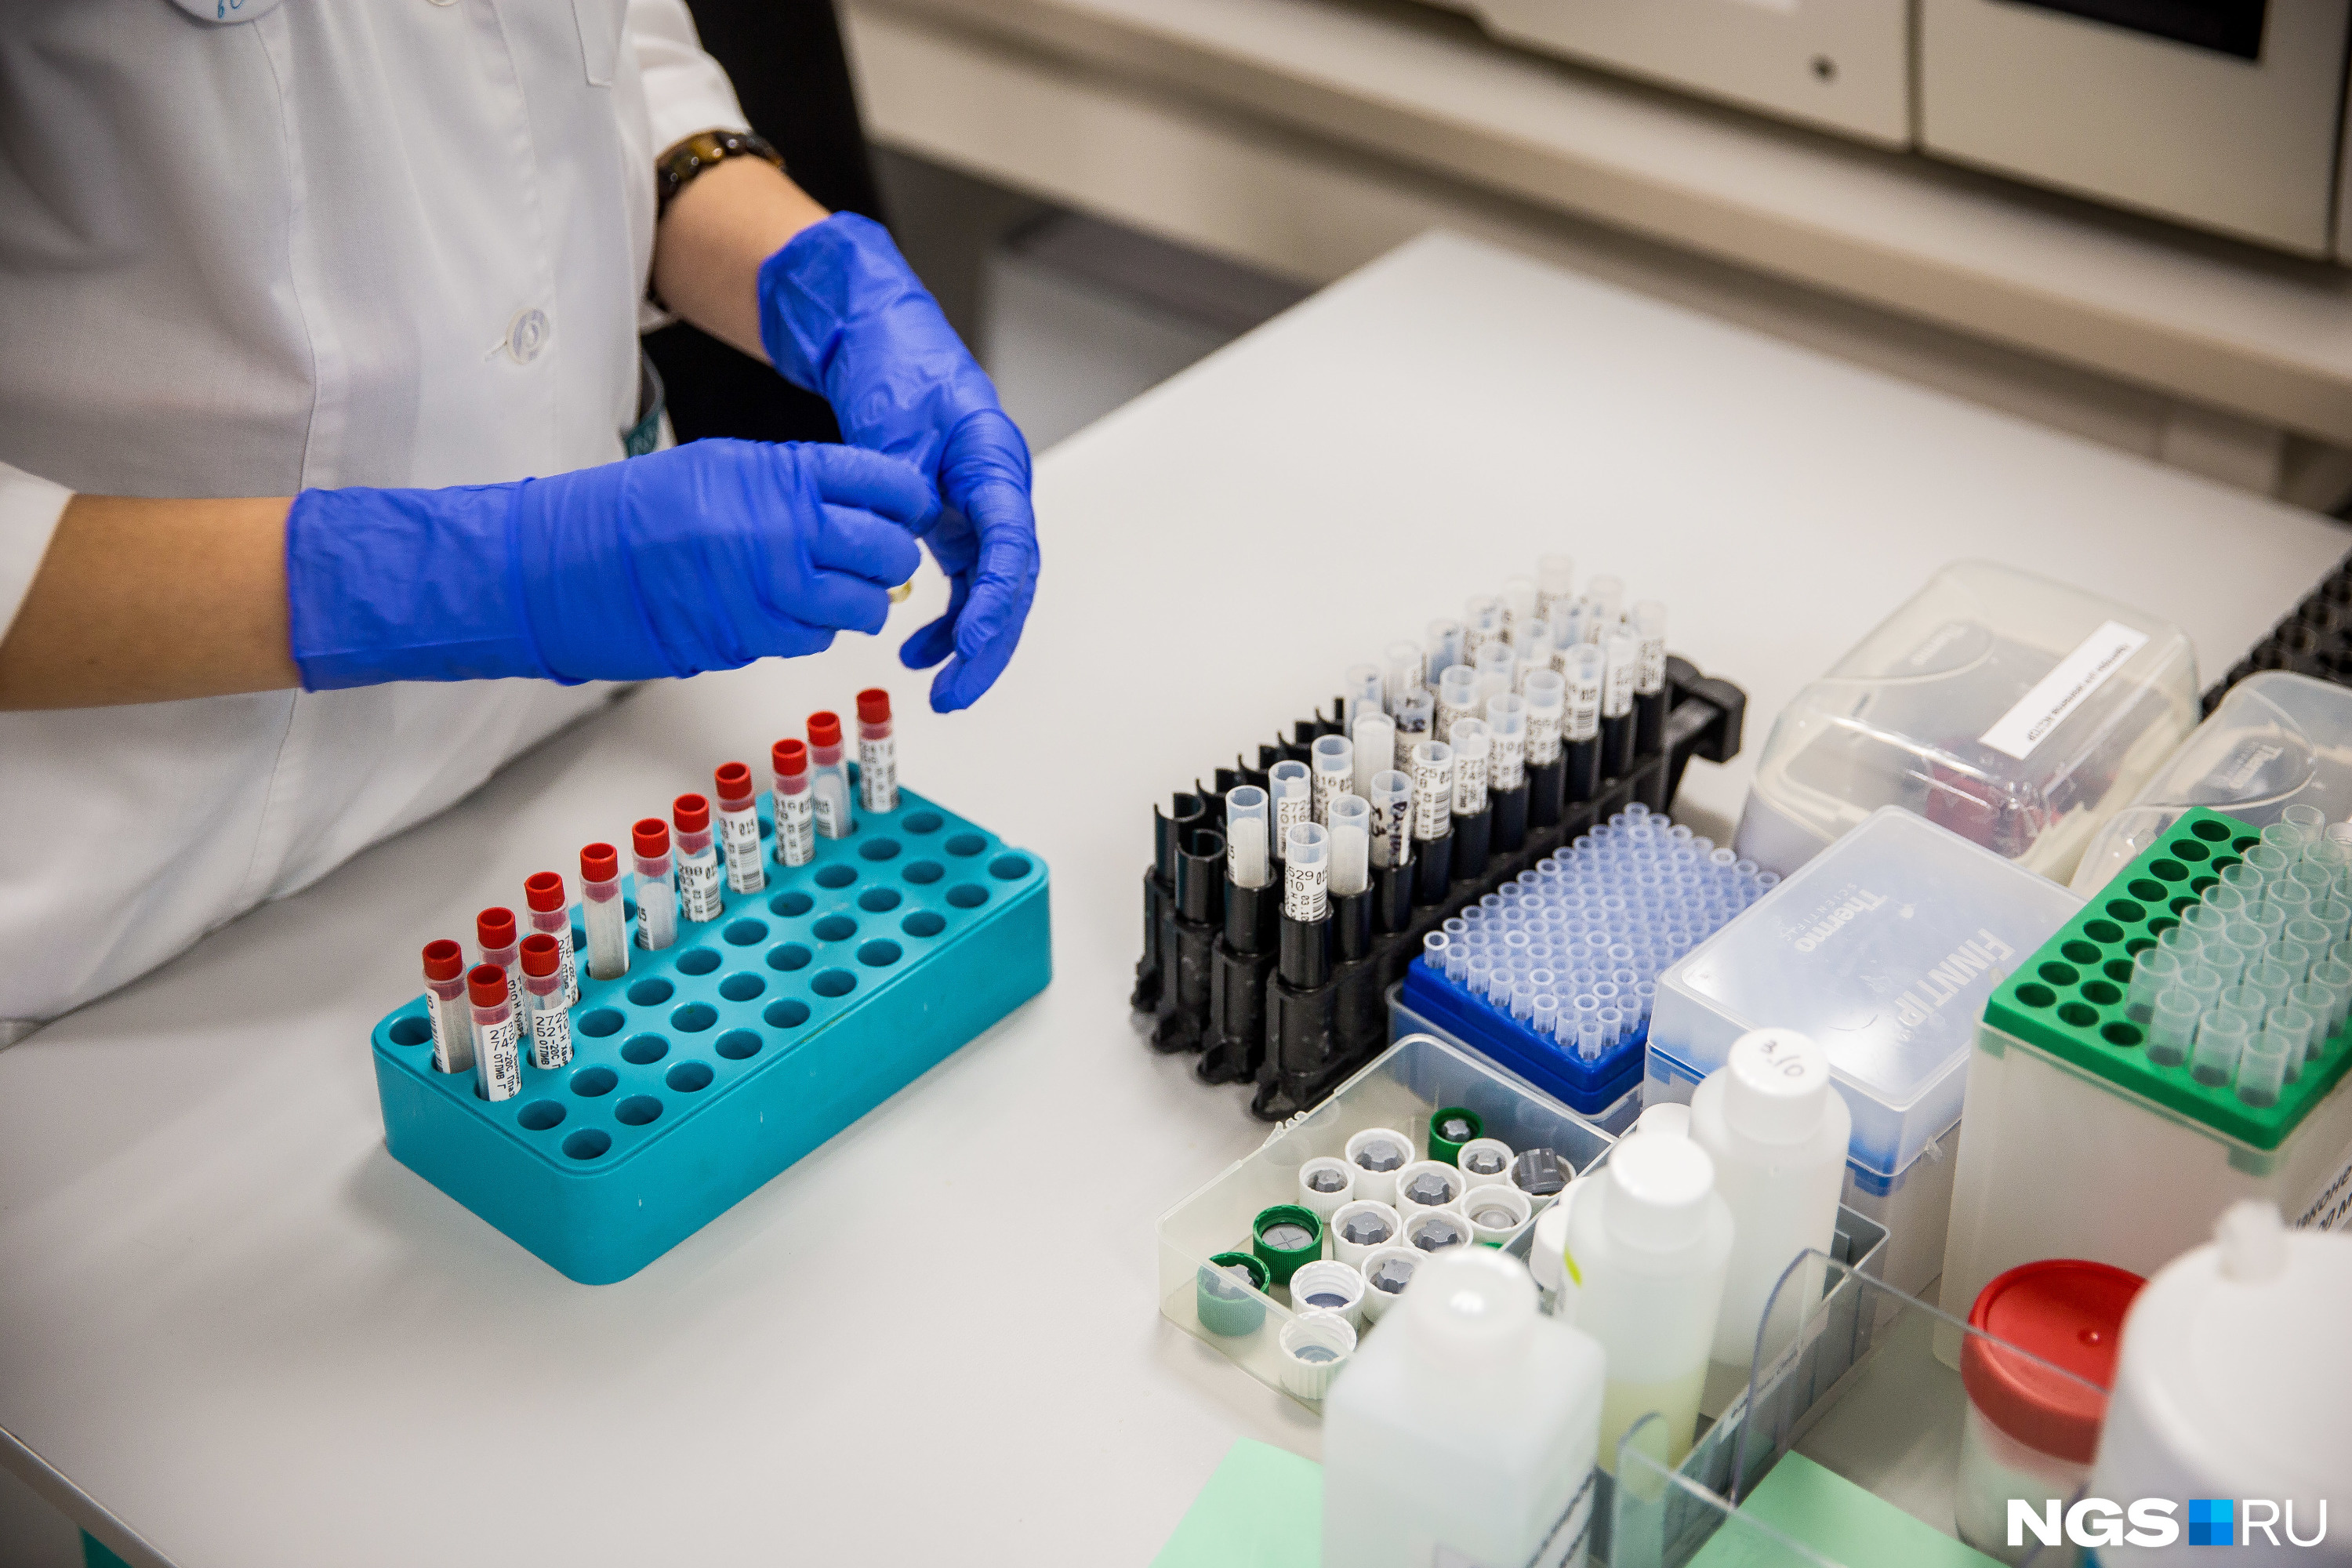 Количество сделанных тестов — один из важнейших показателей, которые учитываются при отмене противоэпидемических мер